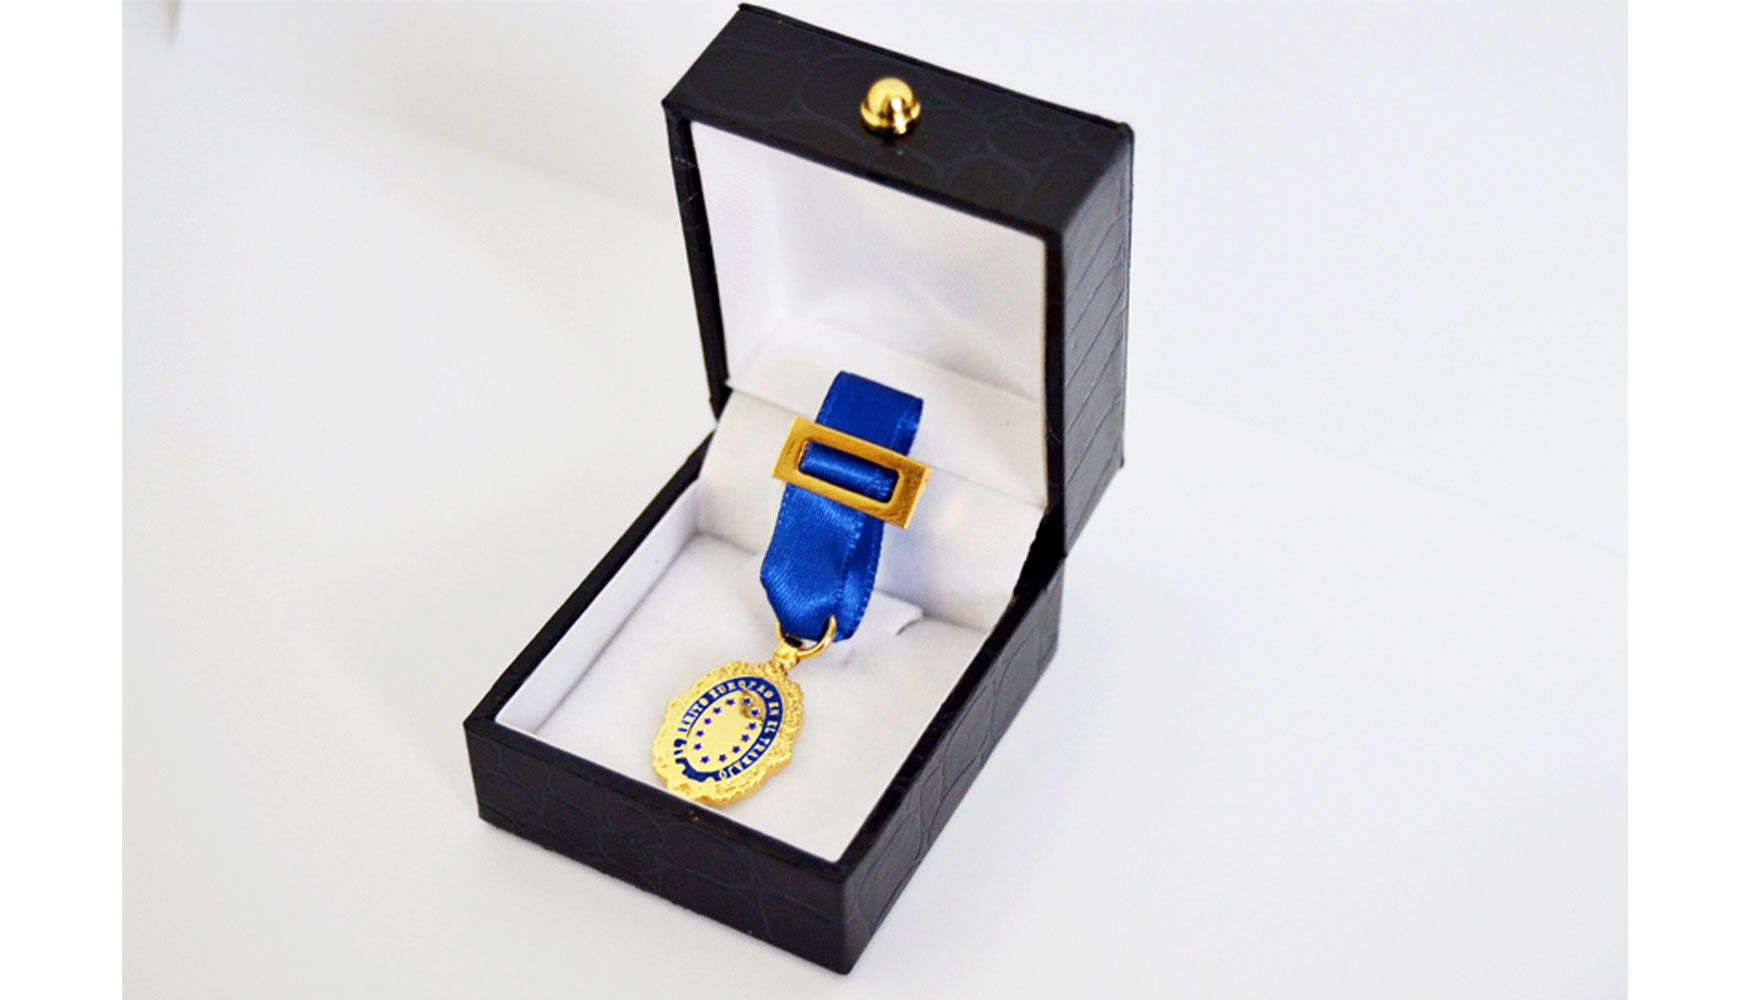 Medalla de Oro Europea al Mrito en el Trabajo que otorga la Aedeec